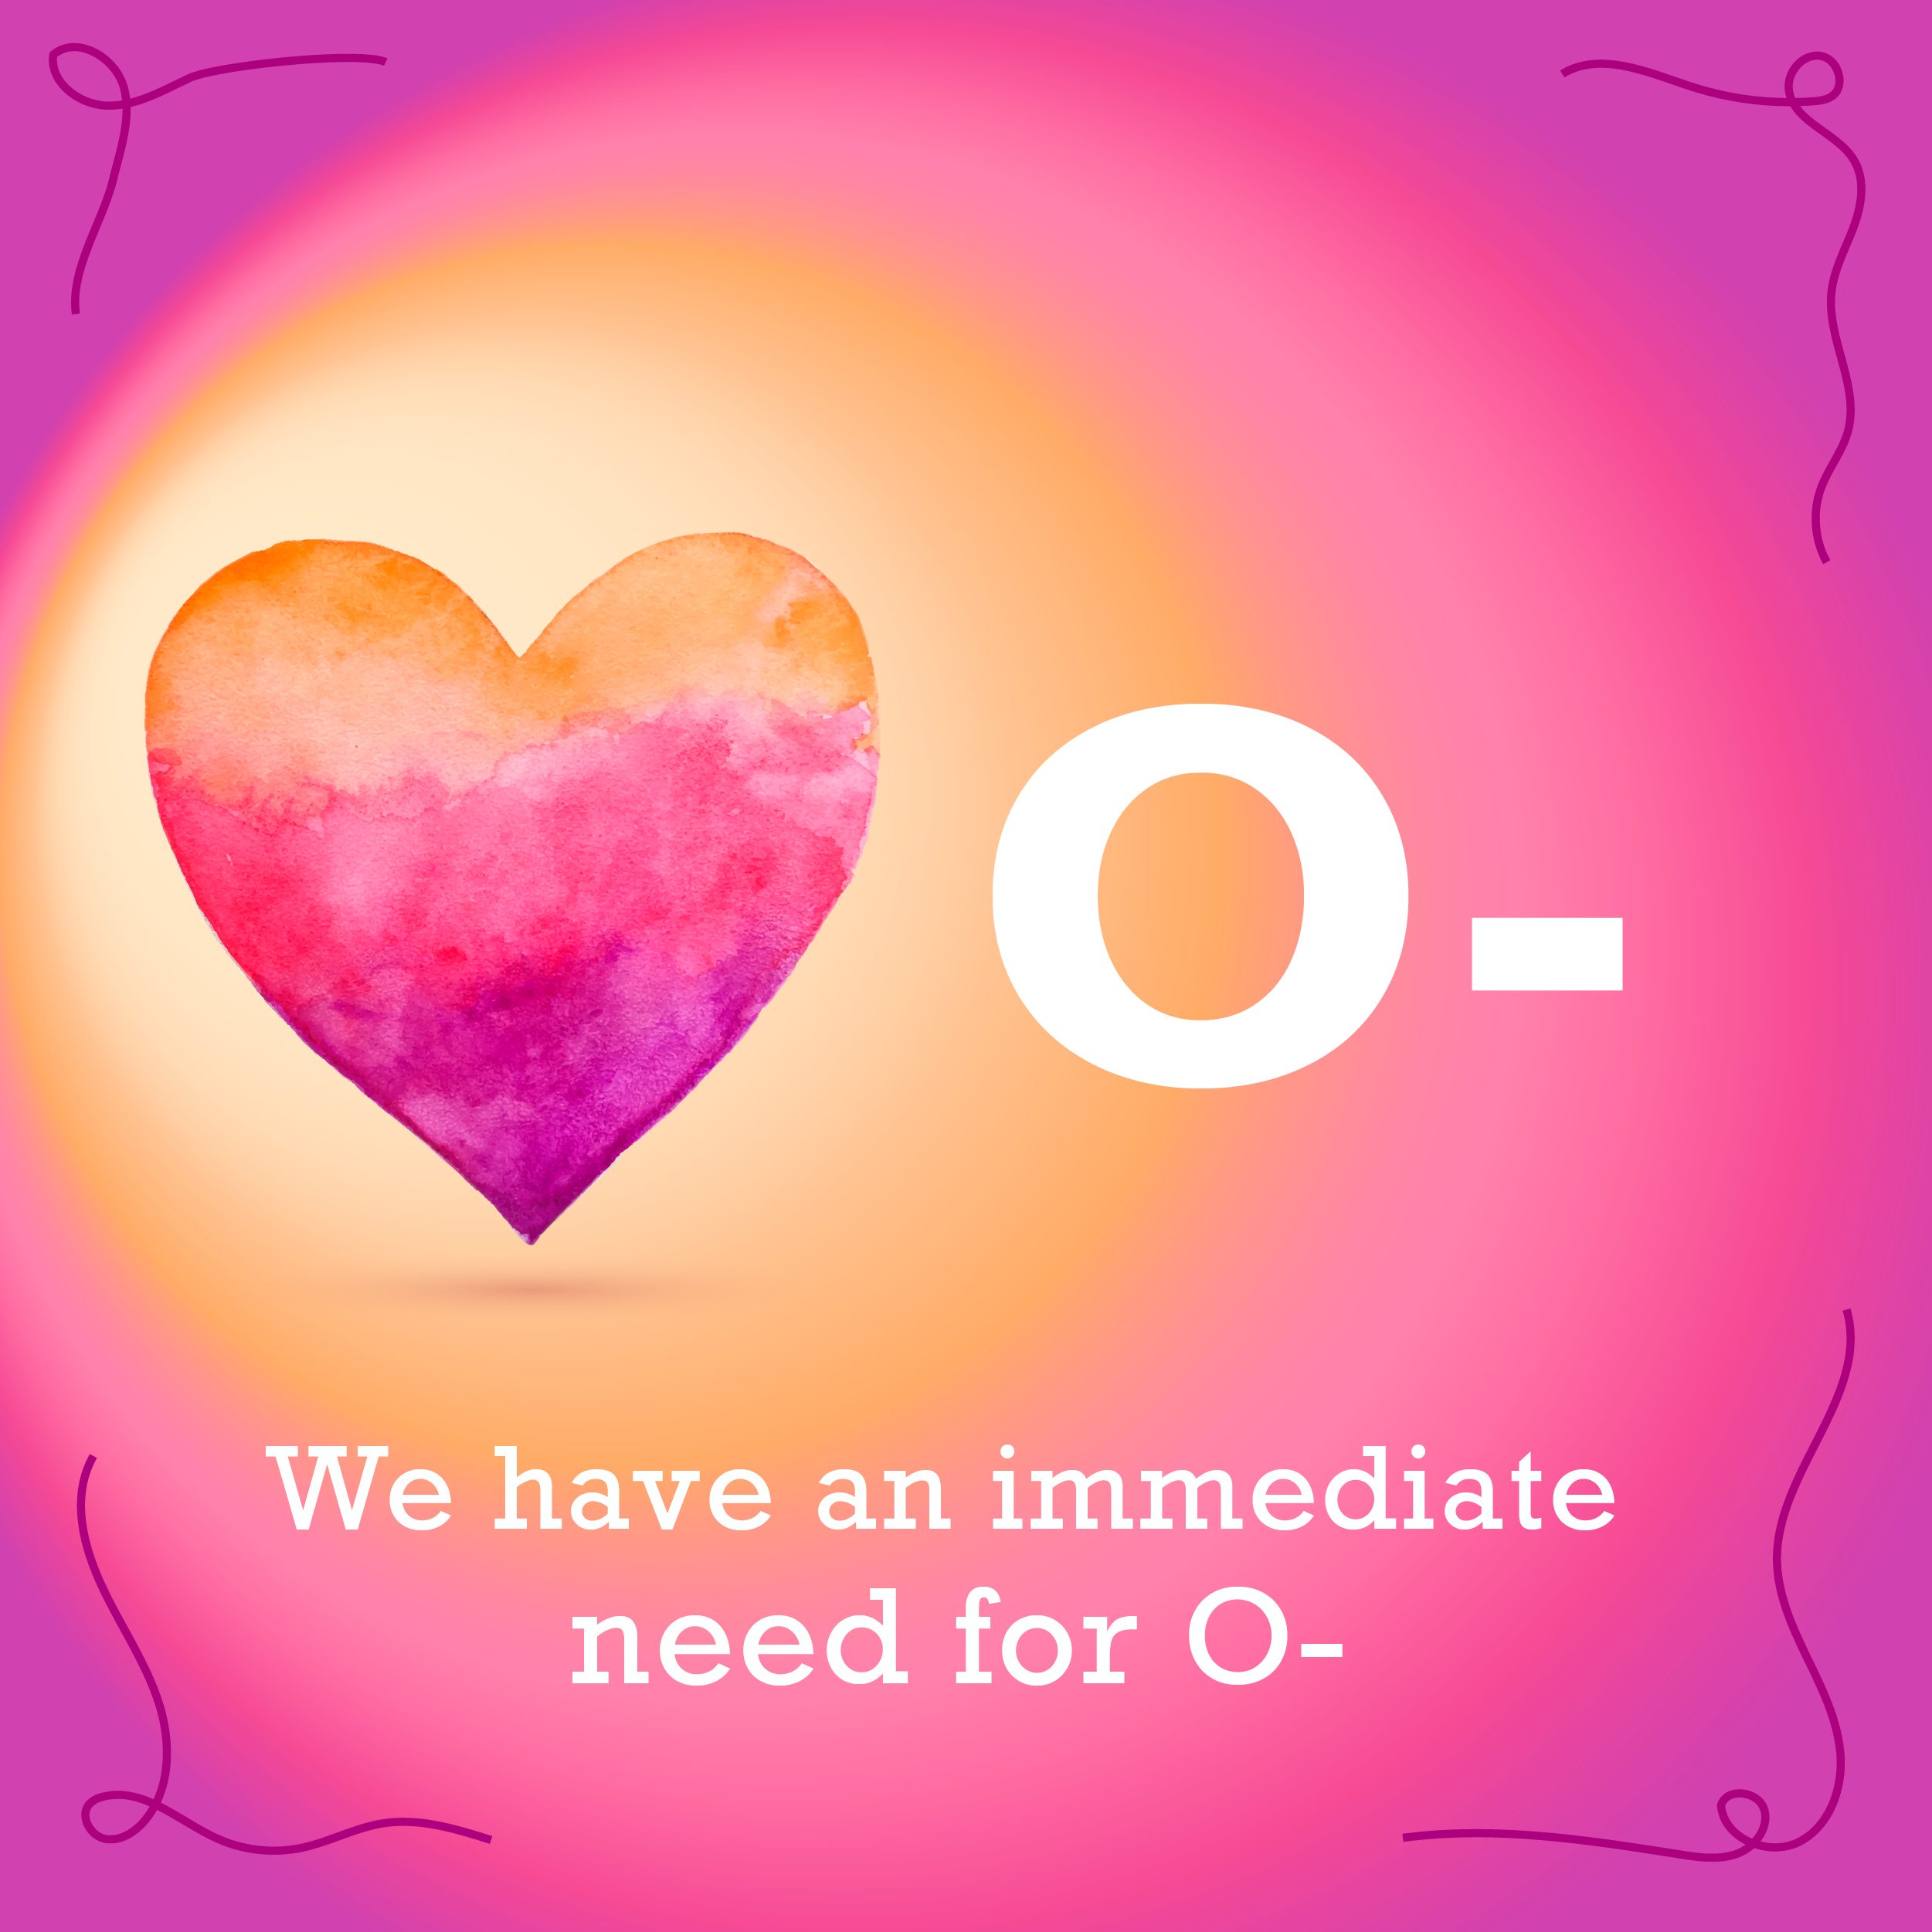 Immediate need for O- blood